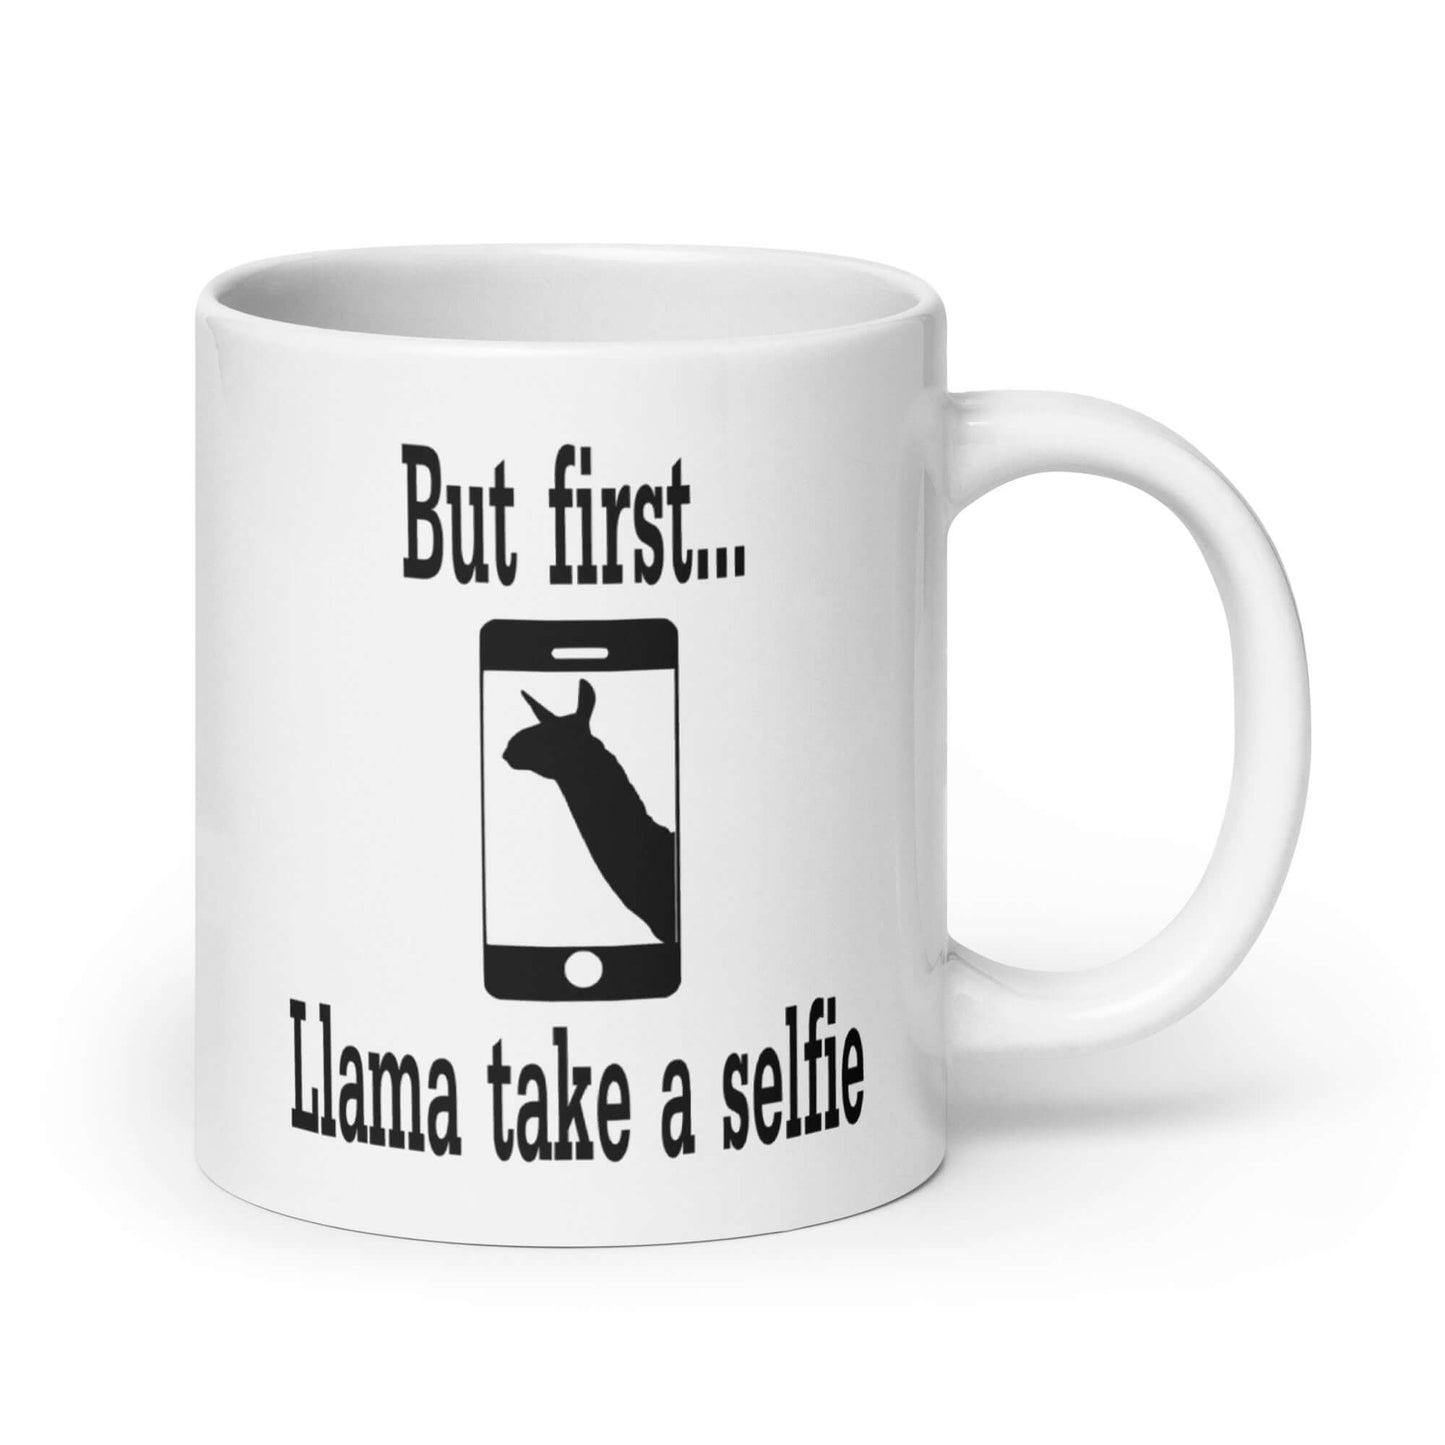 Funny selfie llama pun mug